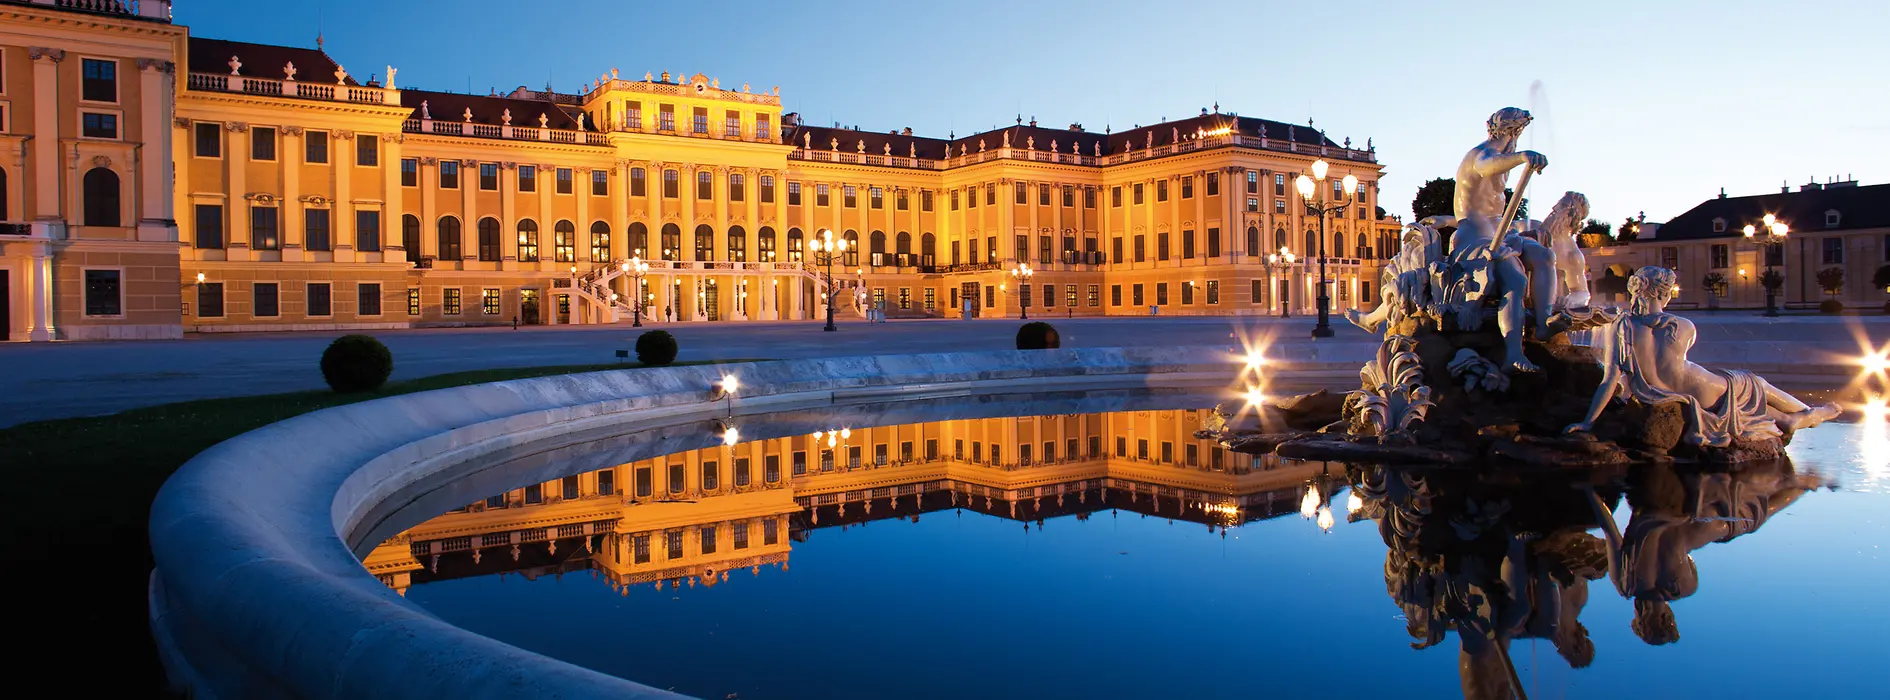 Le château de Schönbrunn de nuit